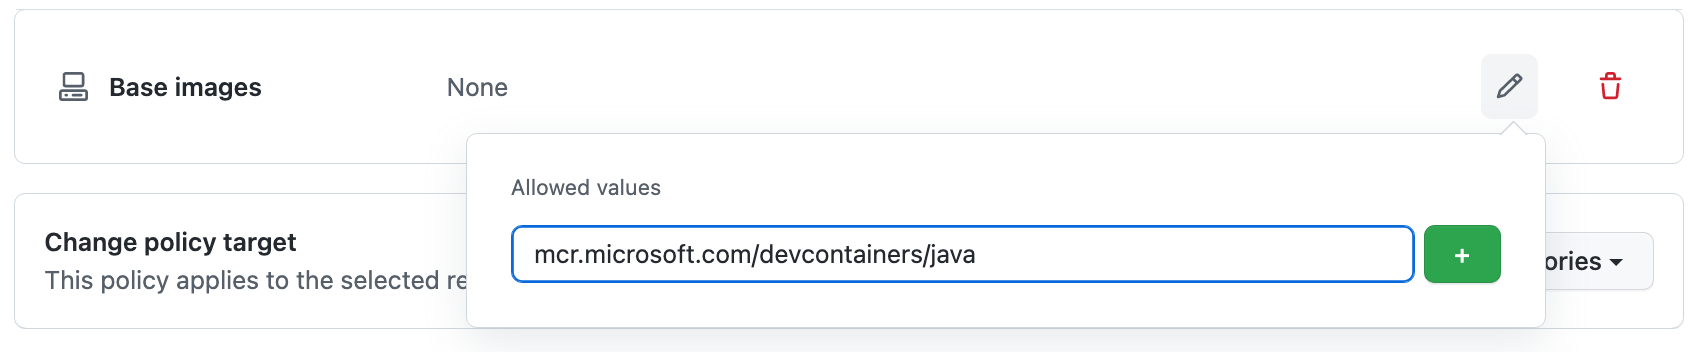 在“允许的值”字段中输入的映像引用“mcr.microsoft.com/devcontainers/java”的屏幕截图。